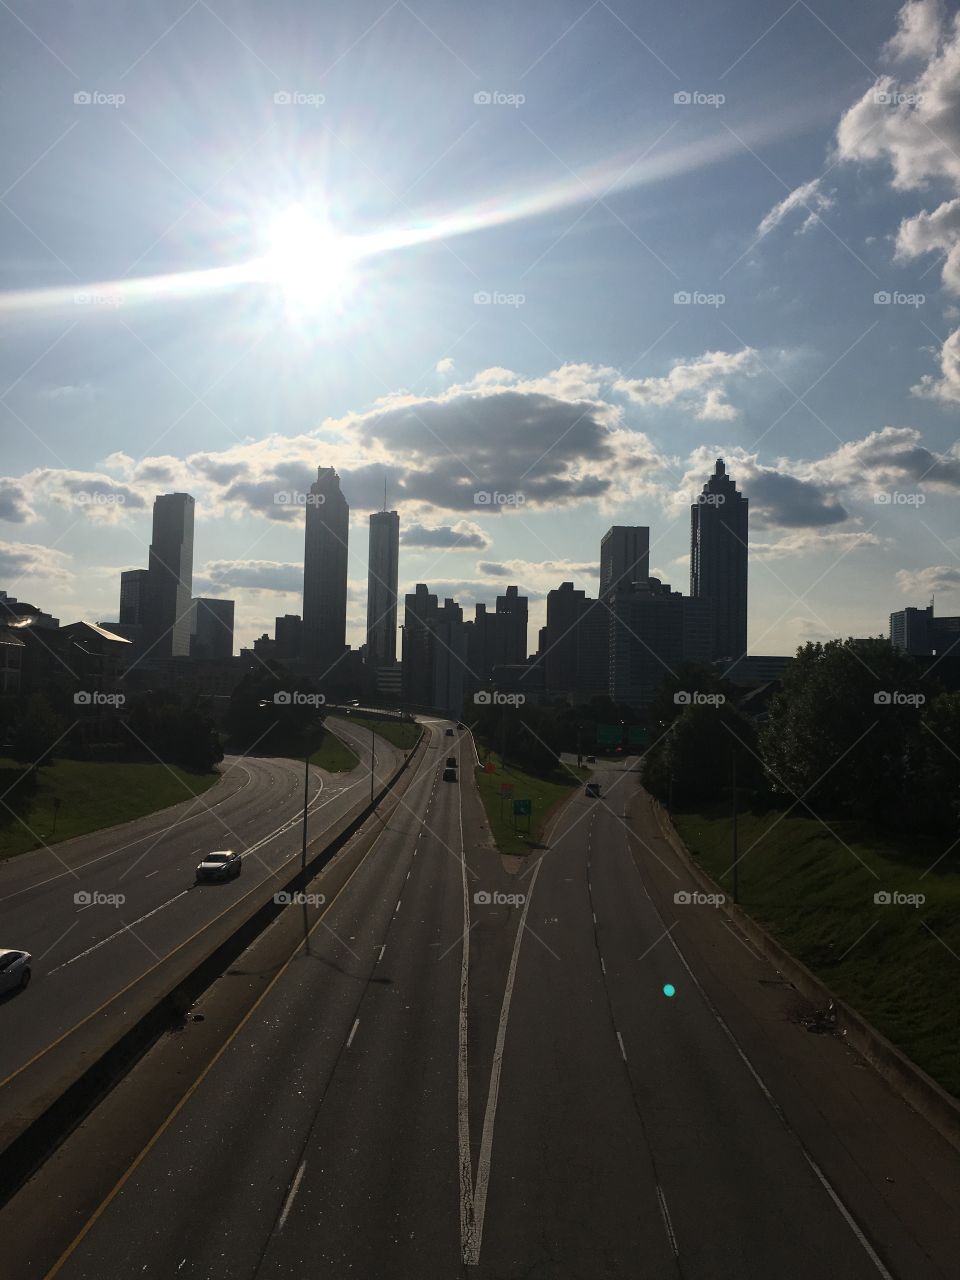 The city of Atlanta seen in the walking dead